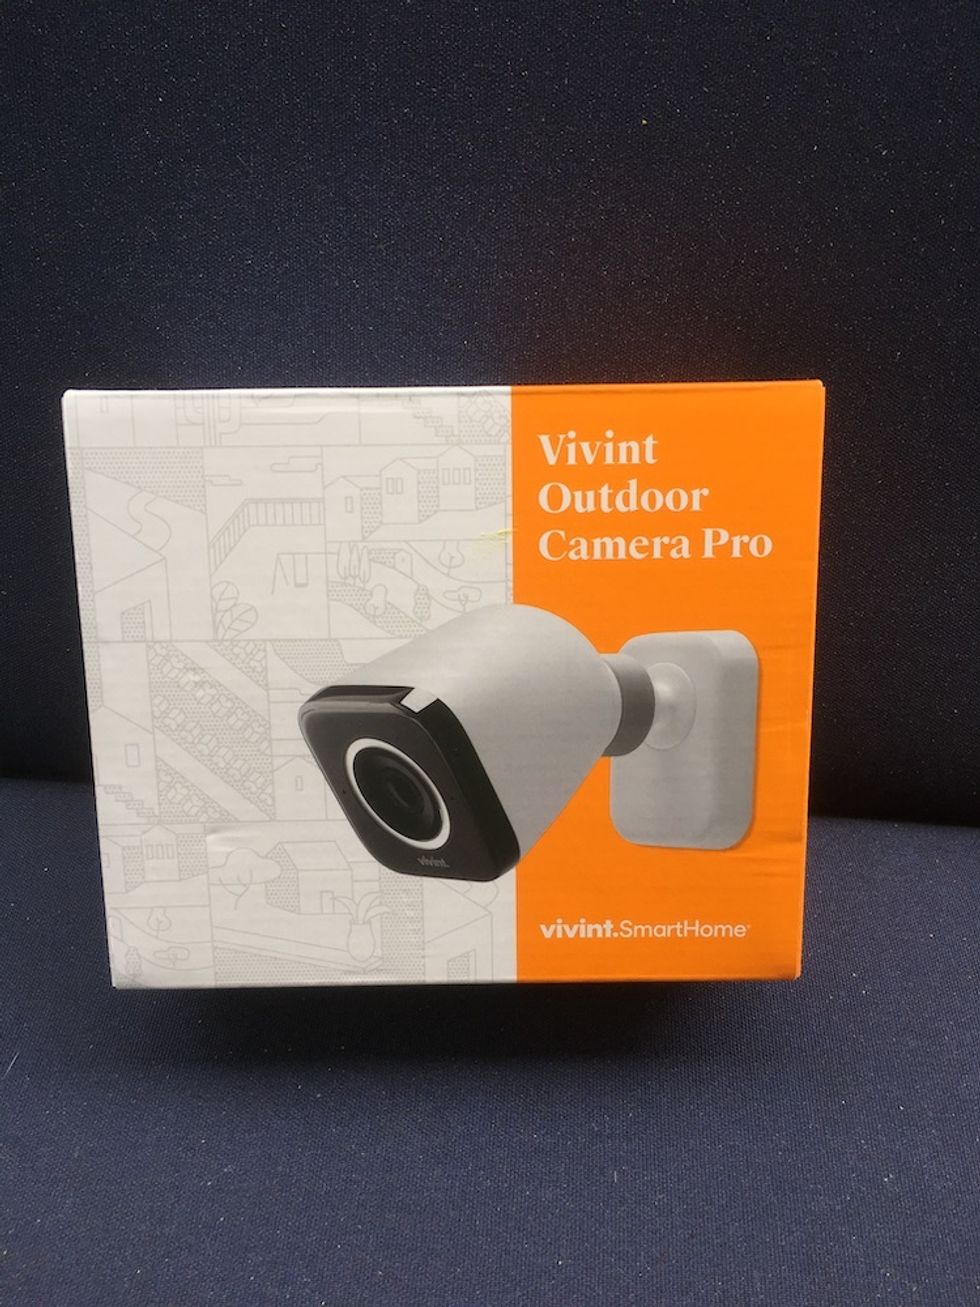 Uma foto da caixa para o Vivint Outdoor Camera Pro